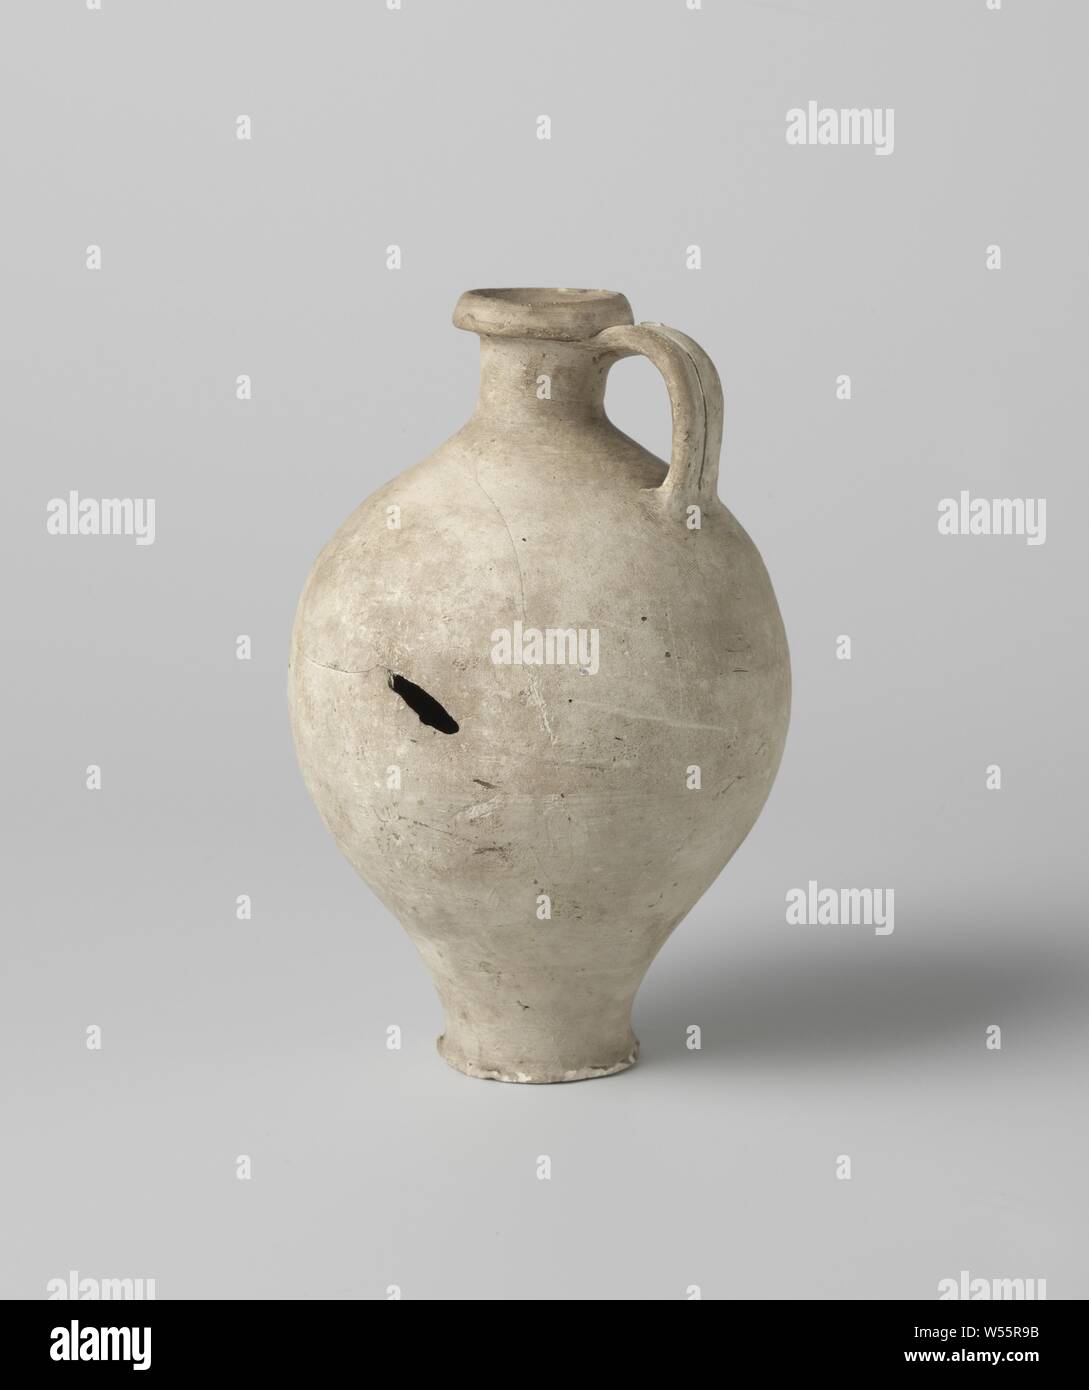 Krug, Kanne von grauem Steingut, mit einem Ohr. Die Kanne ist ein Unten finden., anonym, Rom (möglicherweise), C. 1400 - C. 1950, Steingut, h 17,5 cm x T 12,0 cm Stockfoto